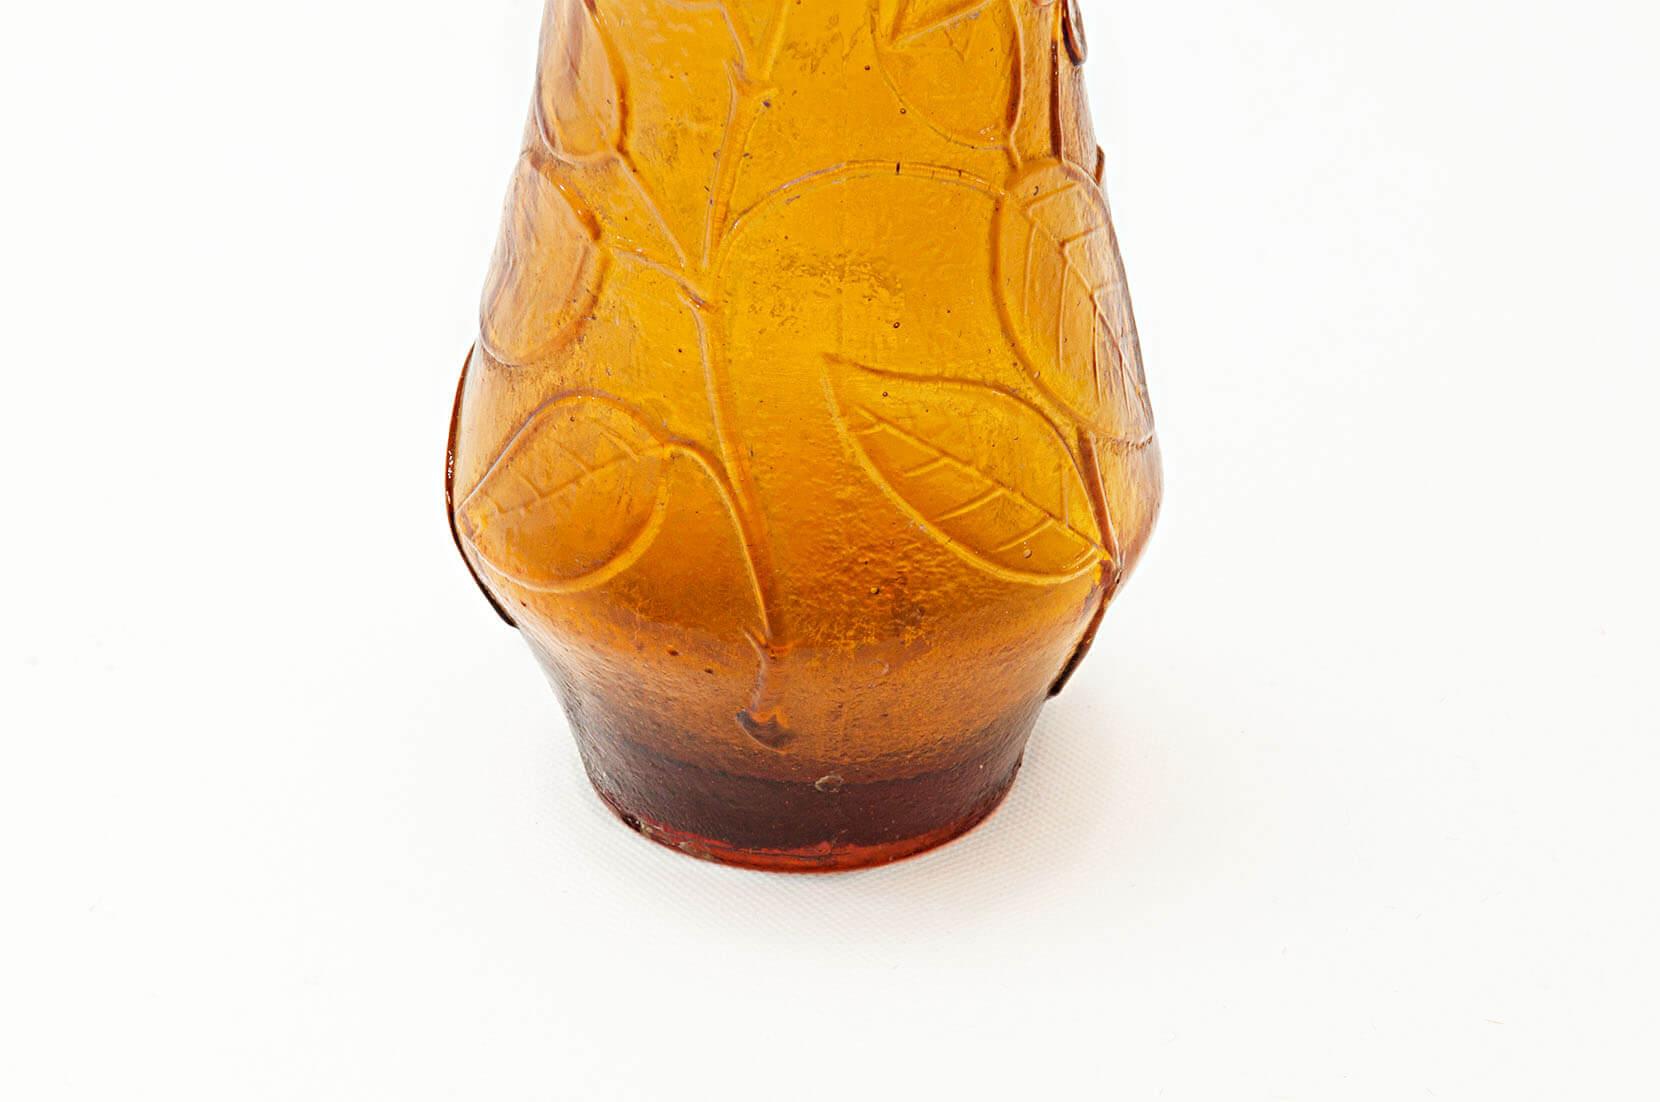 Diese Flasche wurde in den 1960er Jahren in Italien, genauer gesagt auf der venezianischen Insel Murano, hergestellt.
Das Dekormuster ist eine Donne mit geschnitzten Blumen im Glas und blasigem Glas für den Flaschenverschluss. Diese orange Farbe